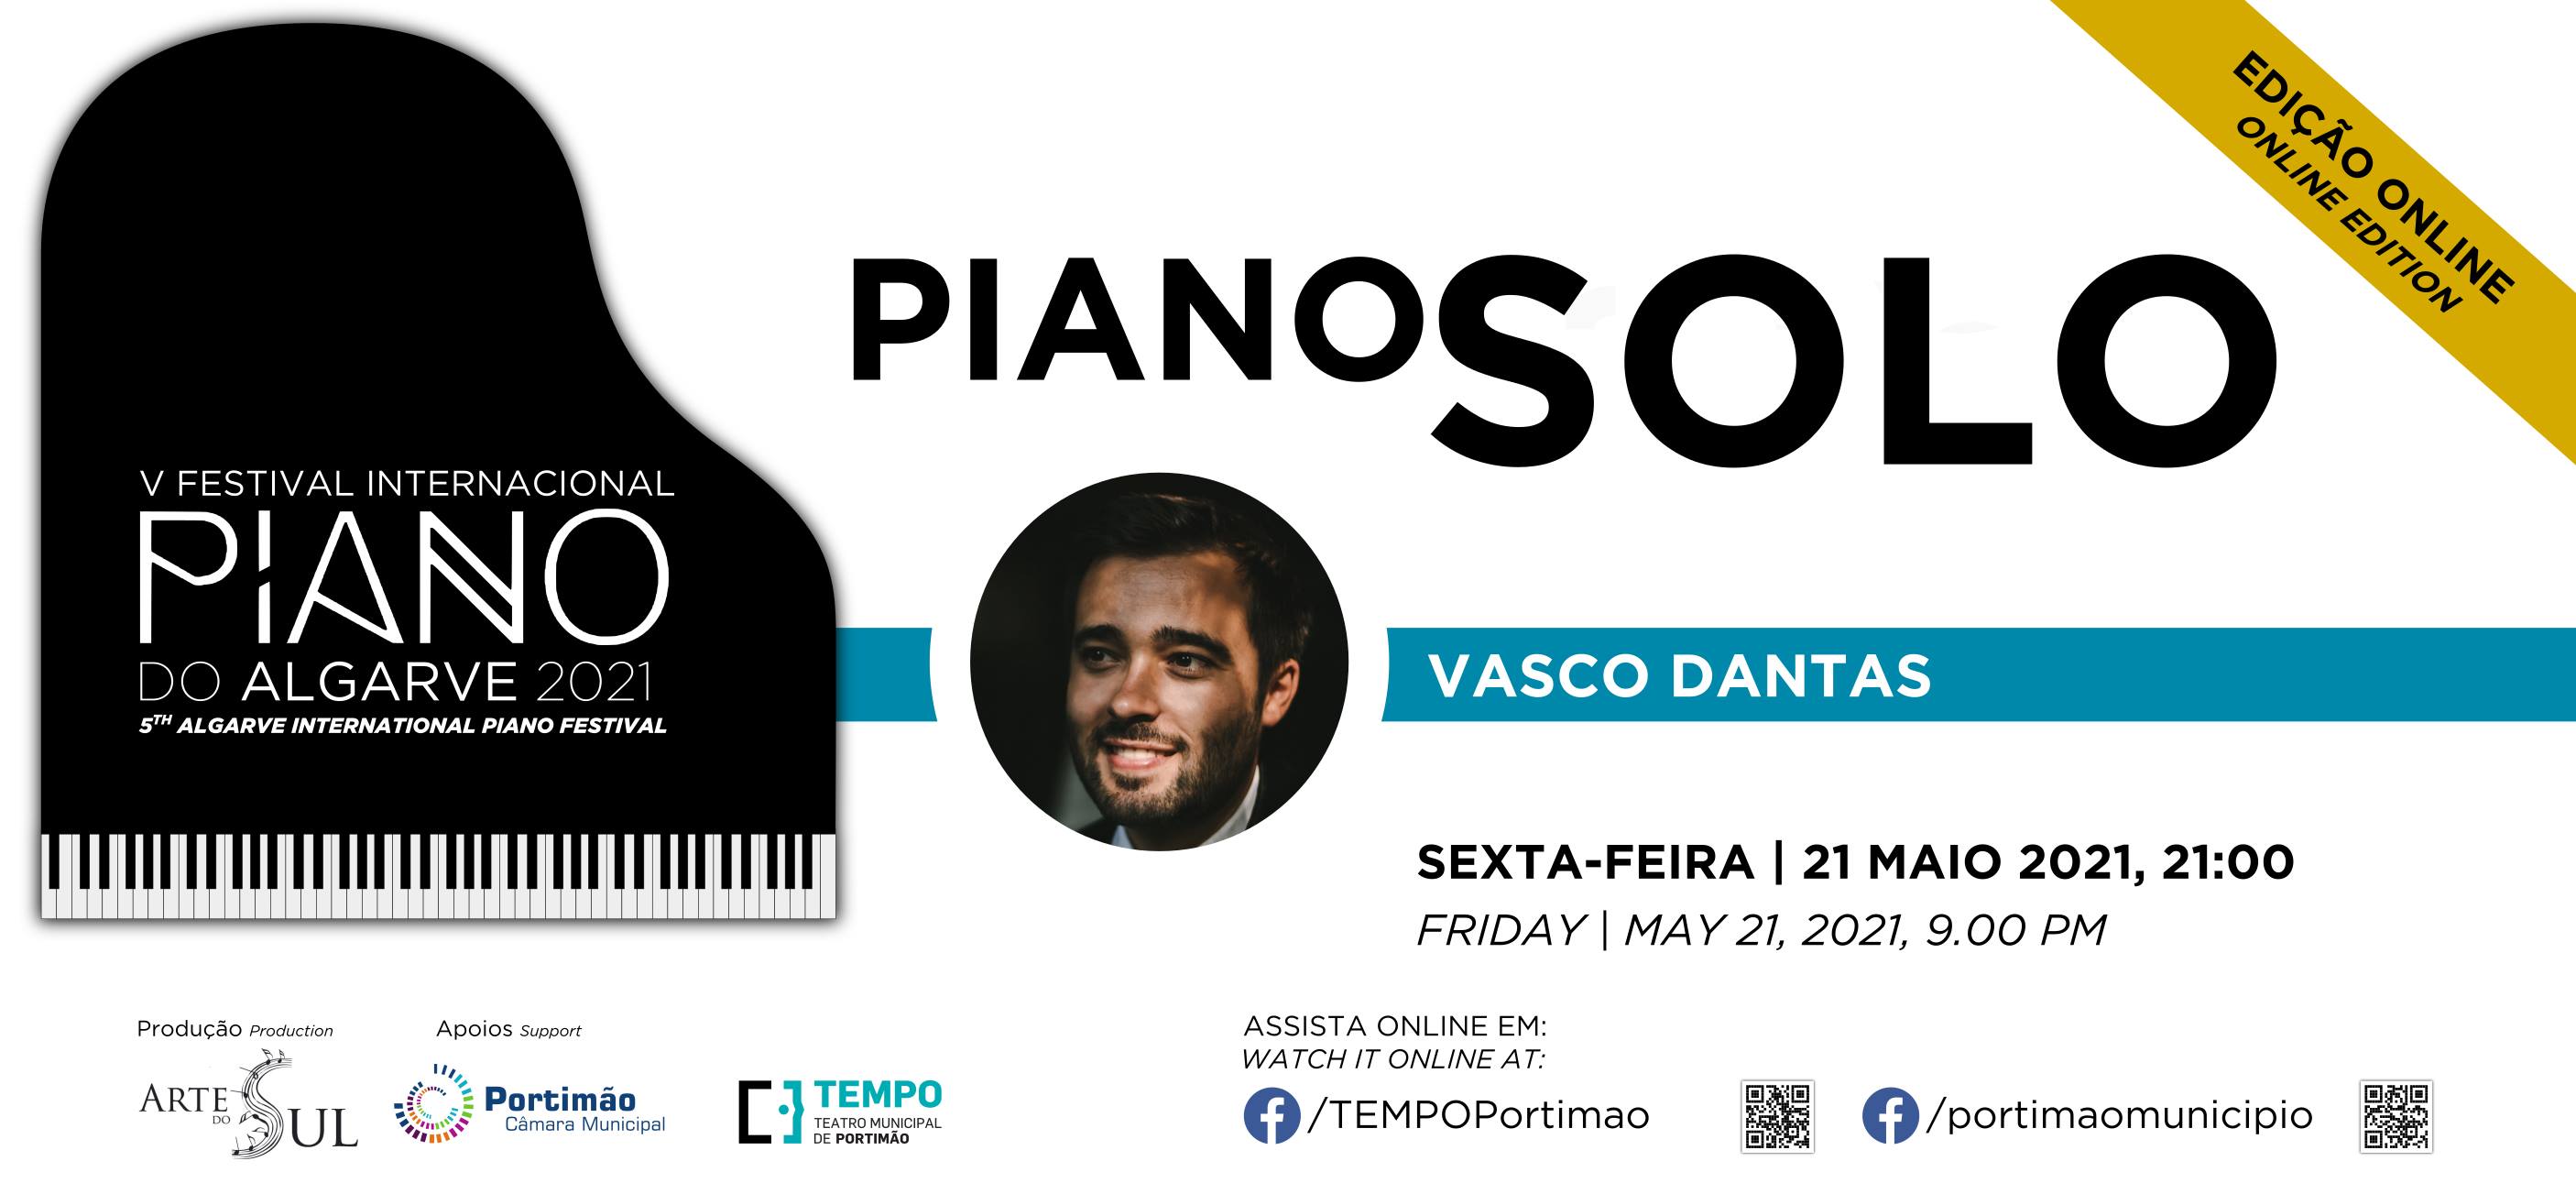 Piano Solo: Vasco Dantas